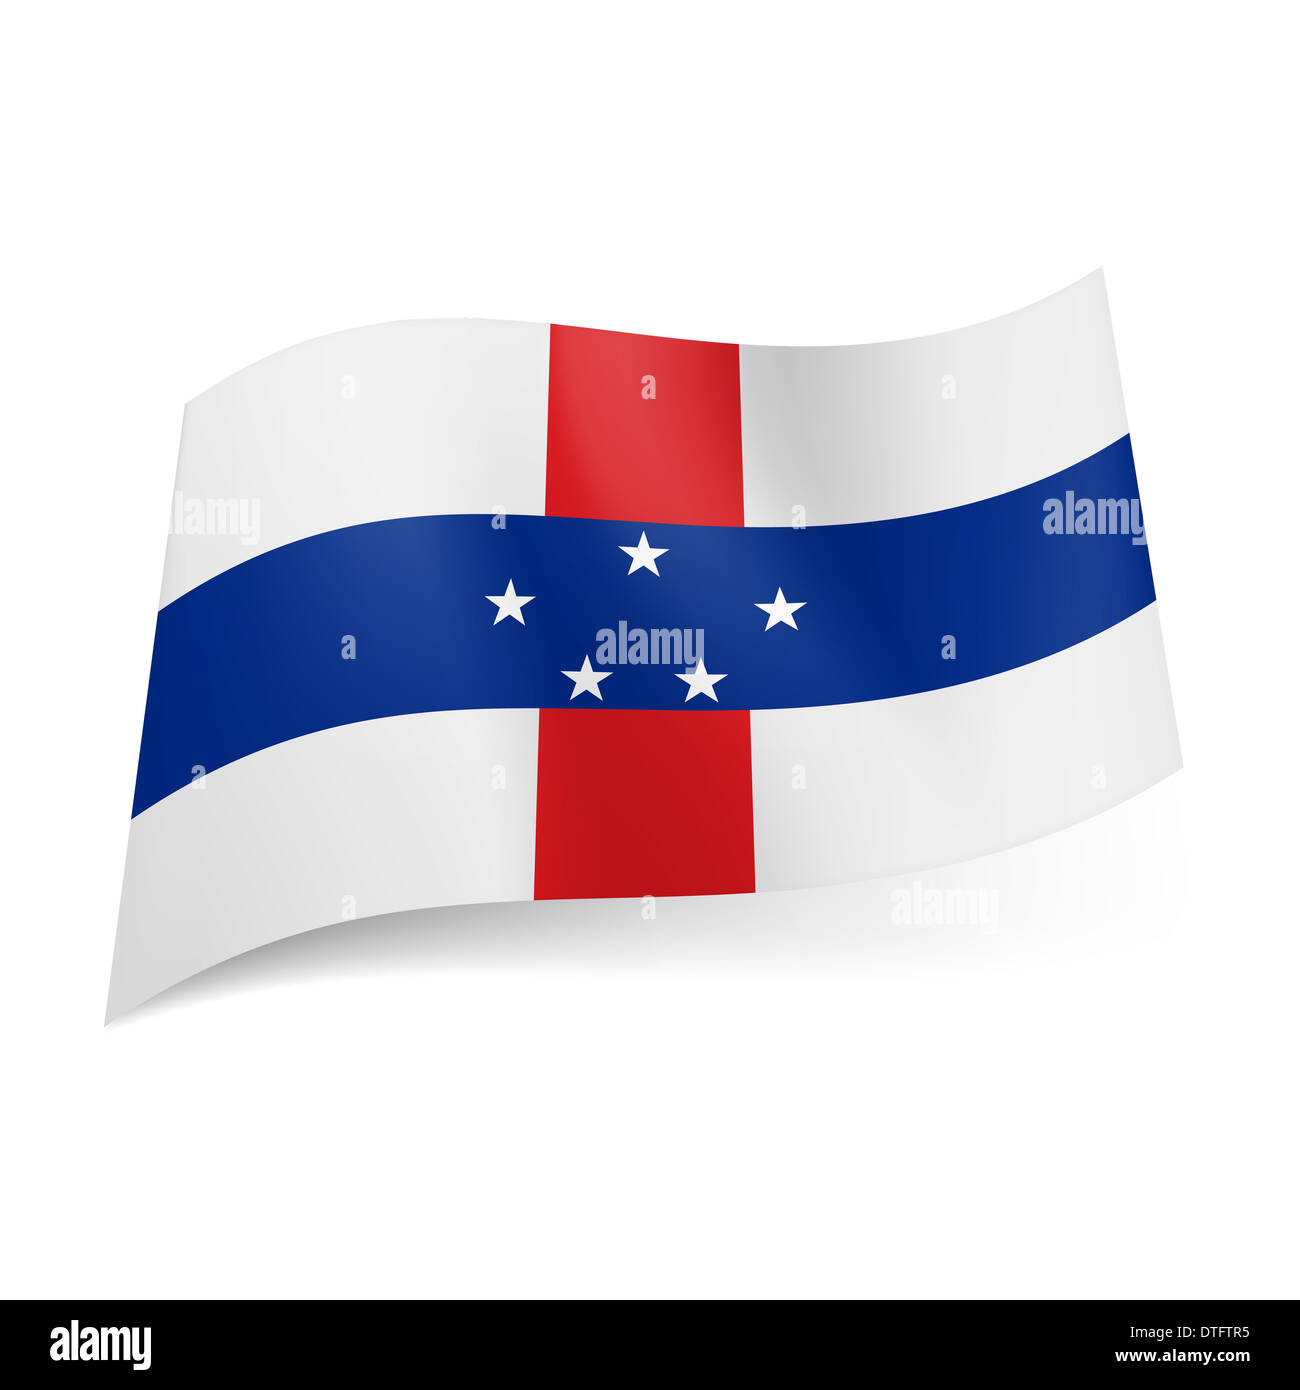 Lá cờ Antilles Hà Lan có nét thiết kế độc đáo với những vòng tròn màu sắc tượng trưng cho các đảo thuộc lãnh thổ Antilles Hà Lan. Bức hình của lá cờ này sẽ là một bức ảnh độc đáo, thu hút sự chú ý của những người yêu thích ẩm thực, văn hóa và du lịch của Hà Lan.